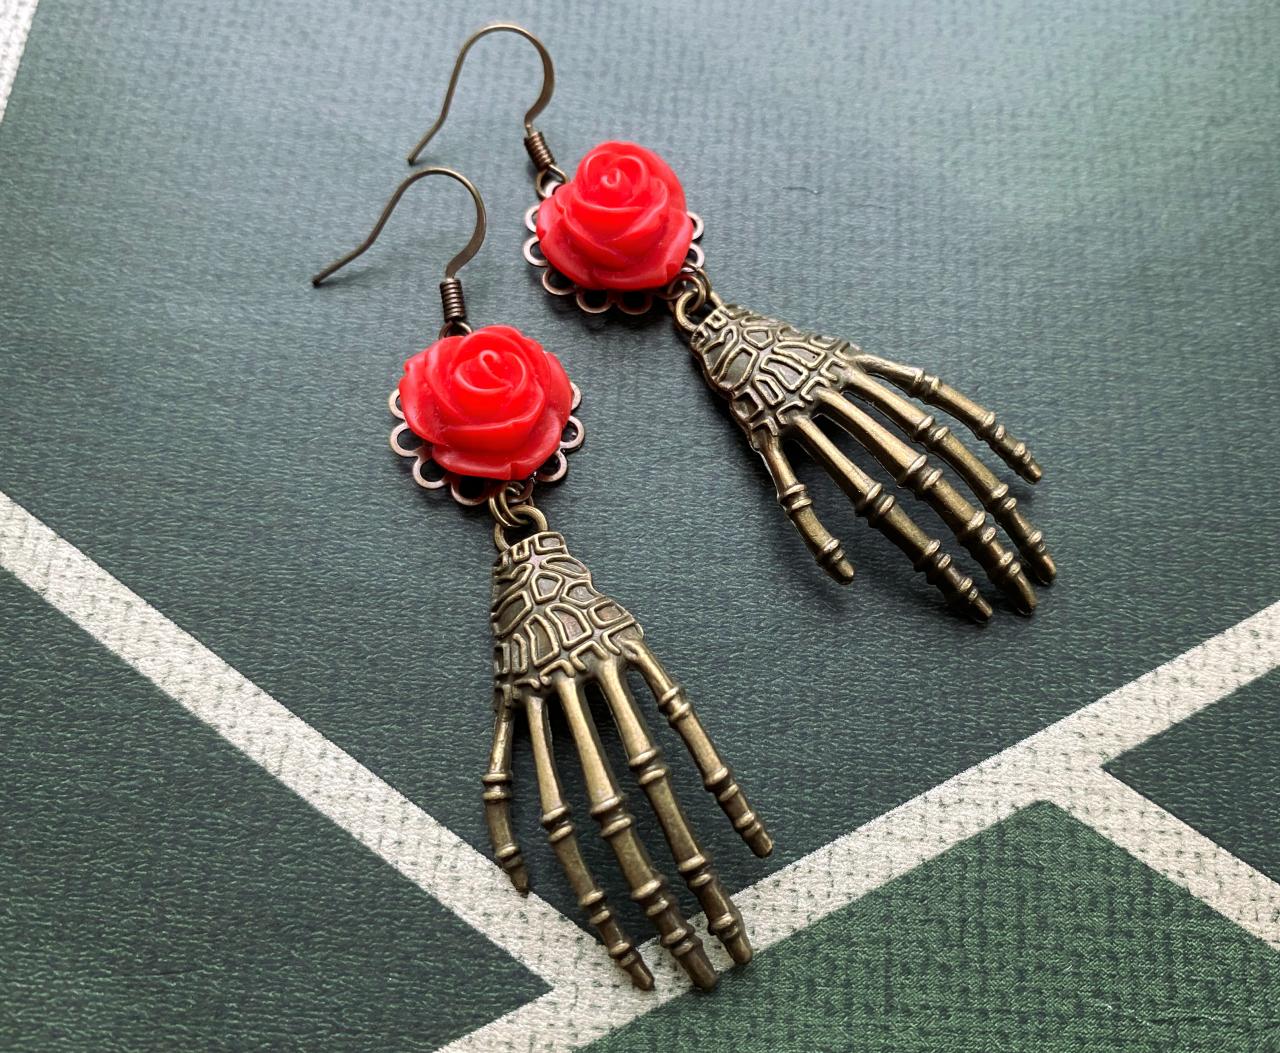 Skeleton Hand Earrings With Red Rose Pendants, Selma Dreams